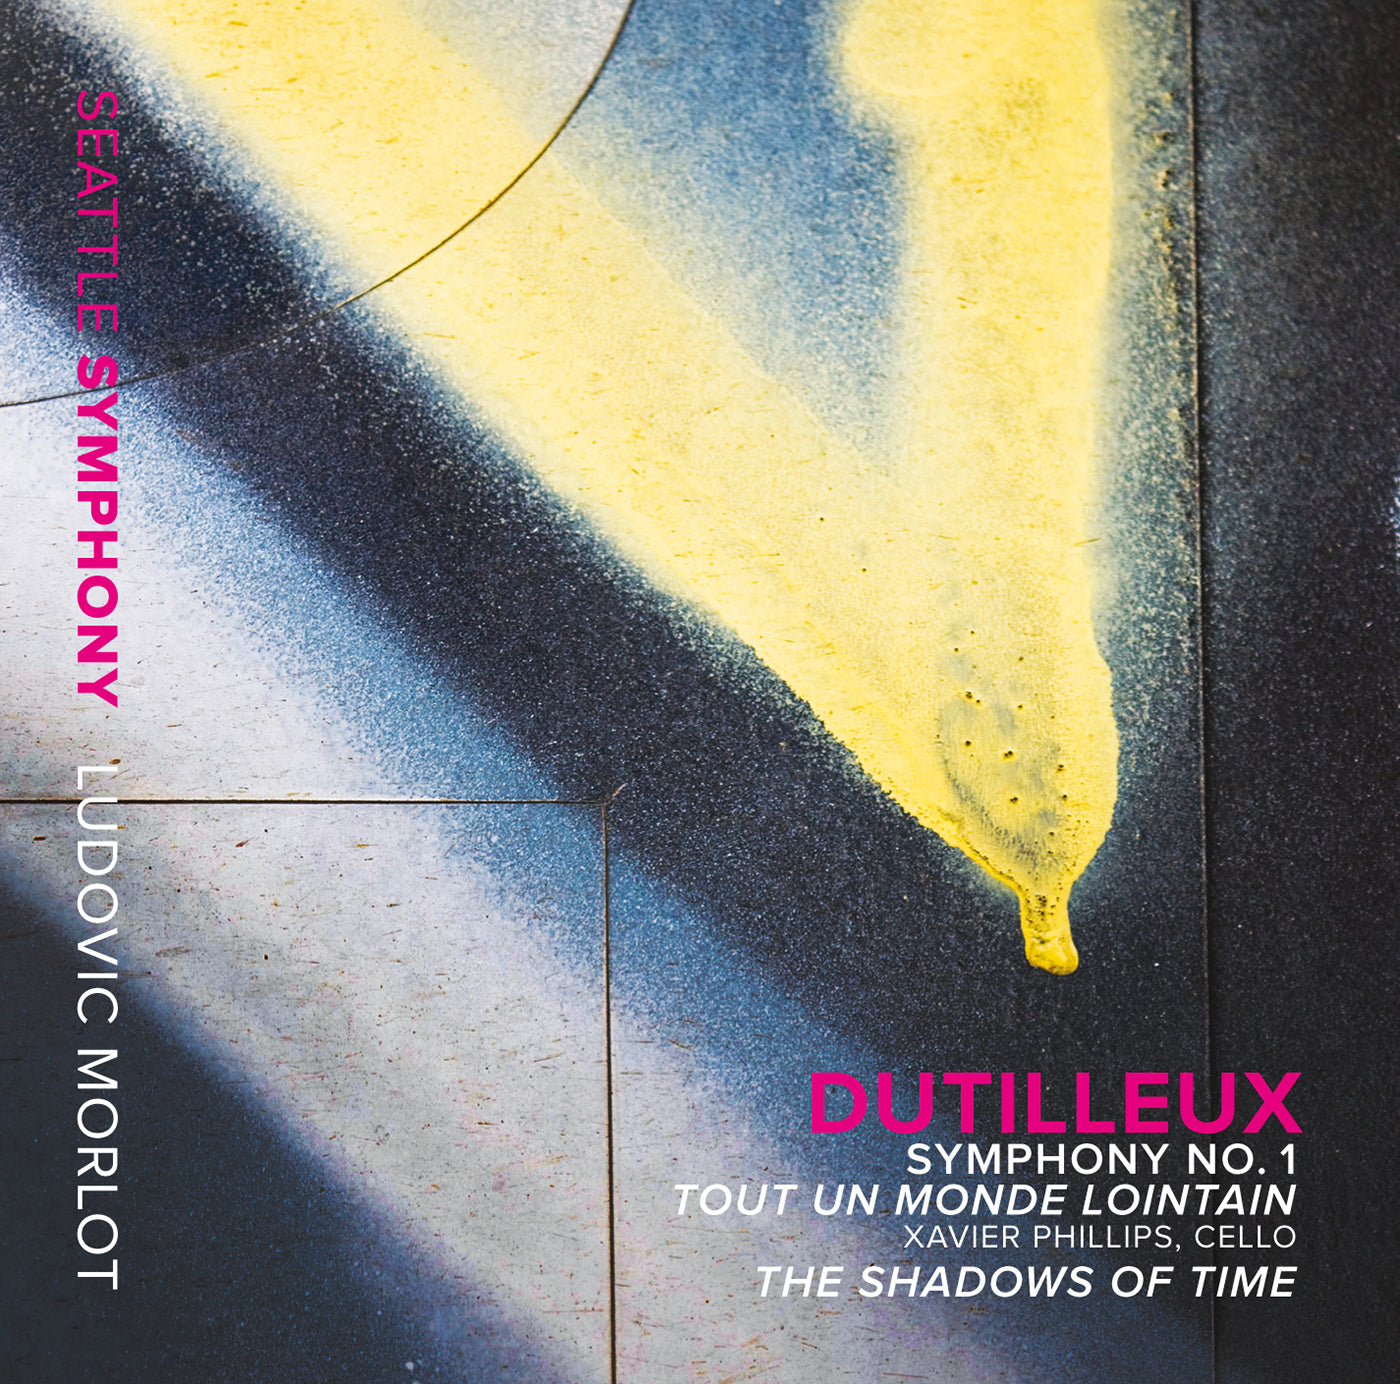 Dutilleux: Symphony No. 1, Tout un monde lointain